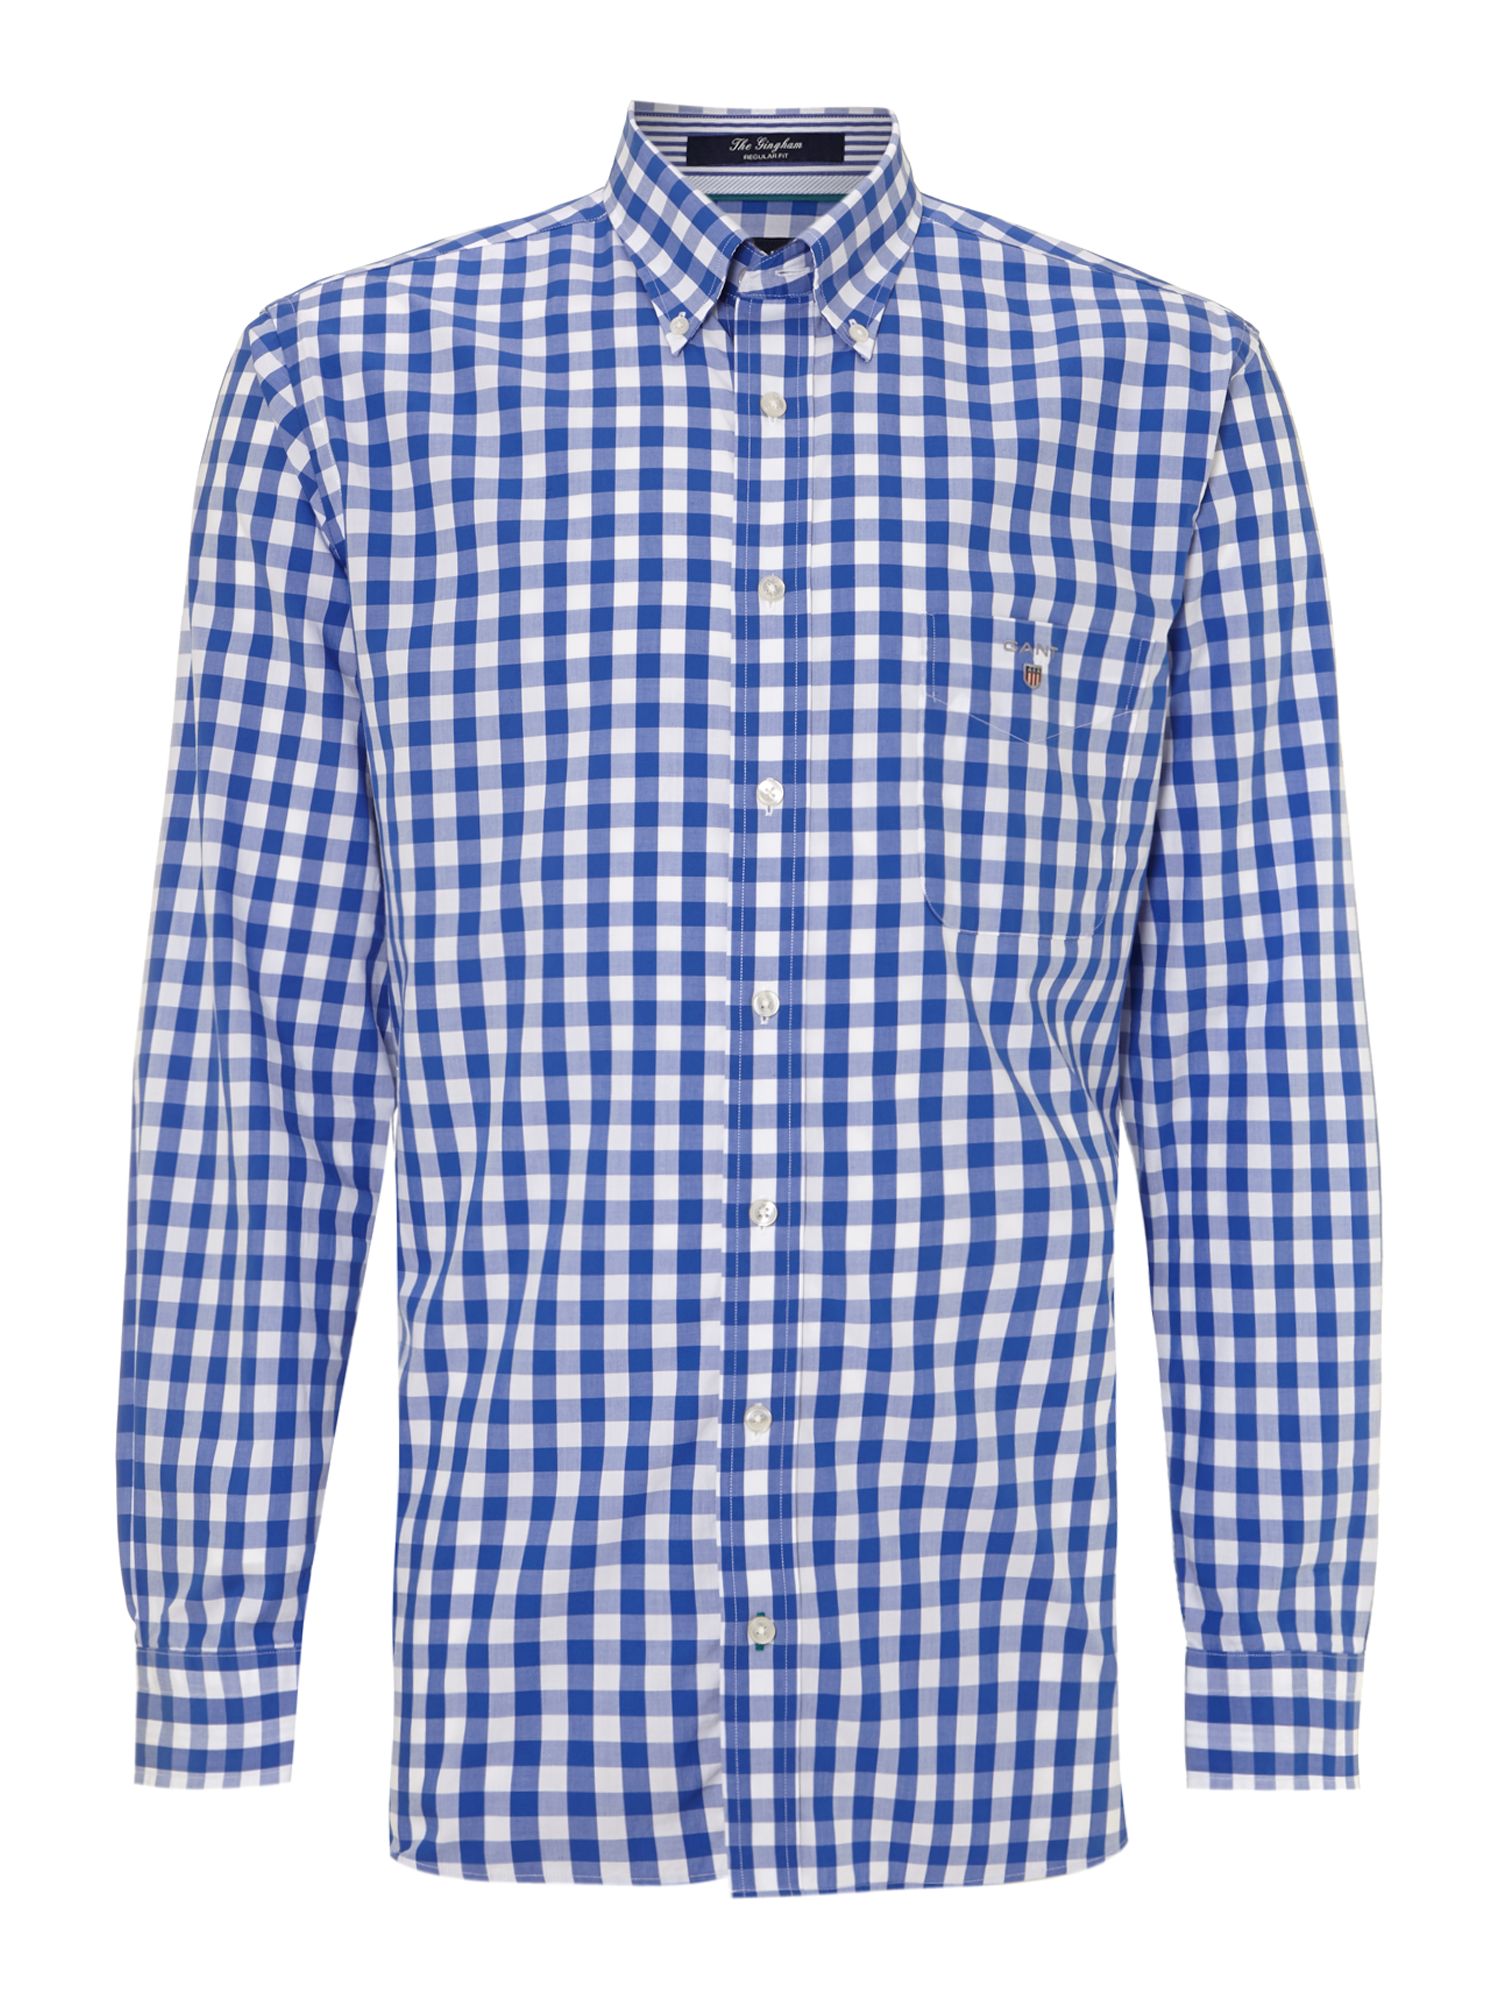 Gant Long Sleeved Gingham Shirt in Blue for Men (Cornflower) | Lyst